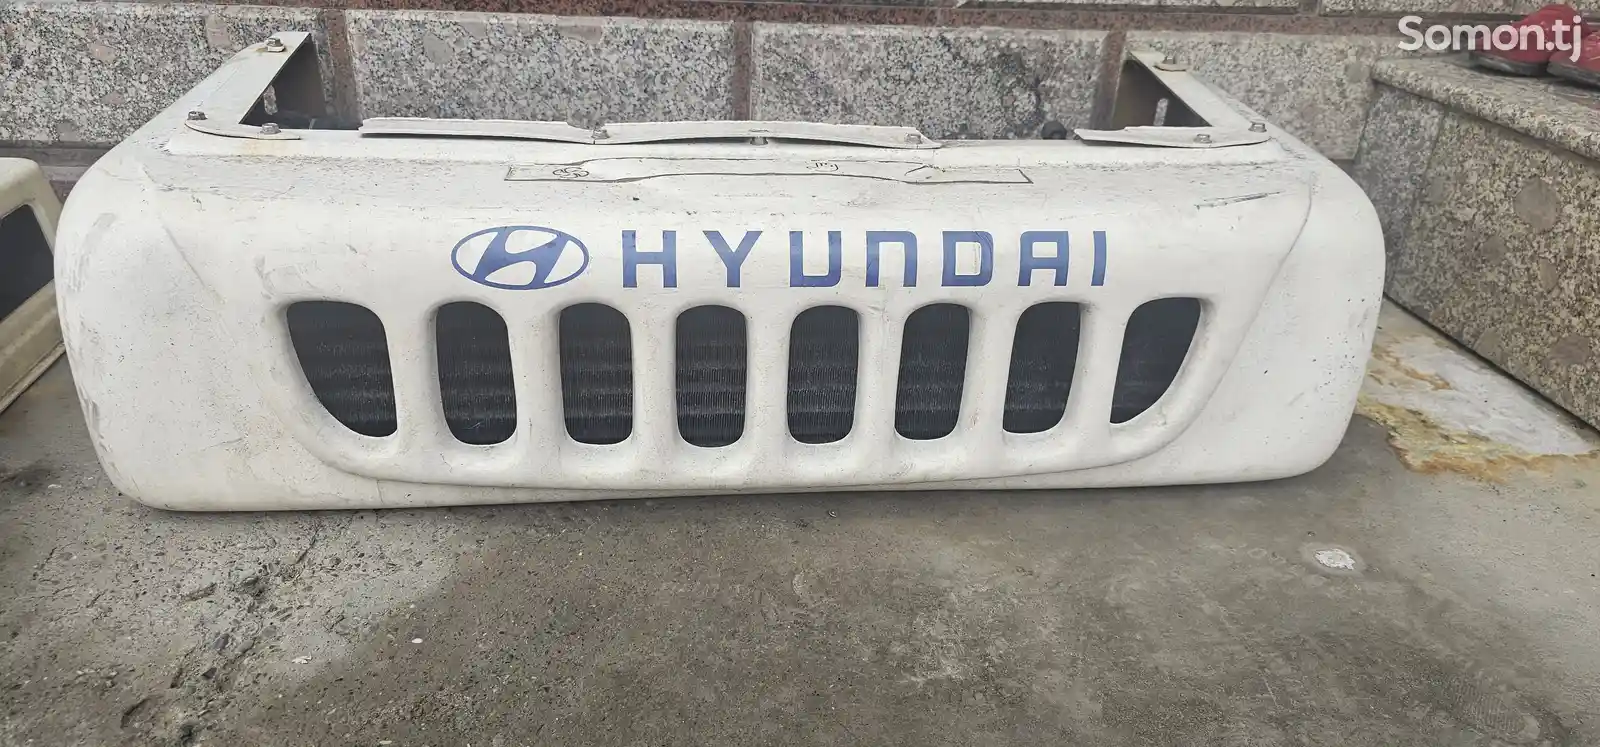 Система охлаждения от Hyundai-1